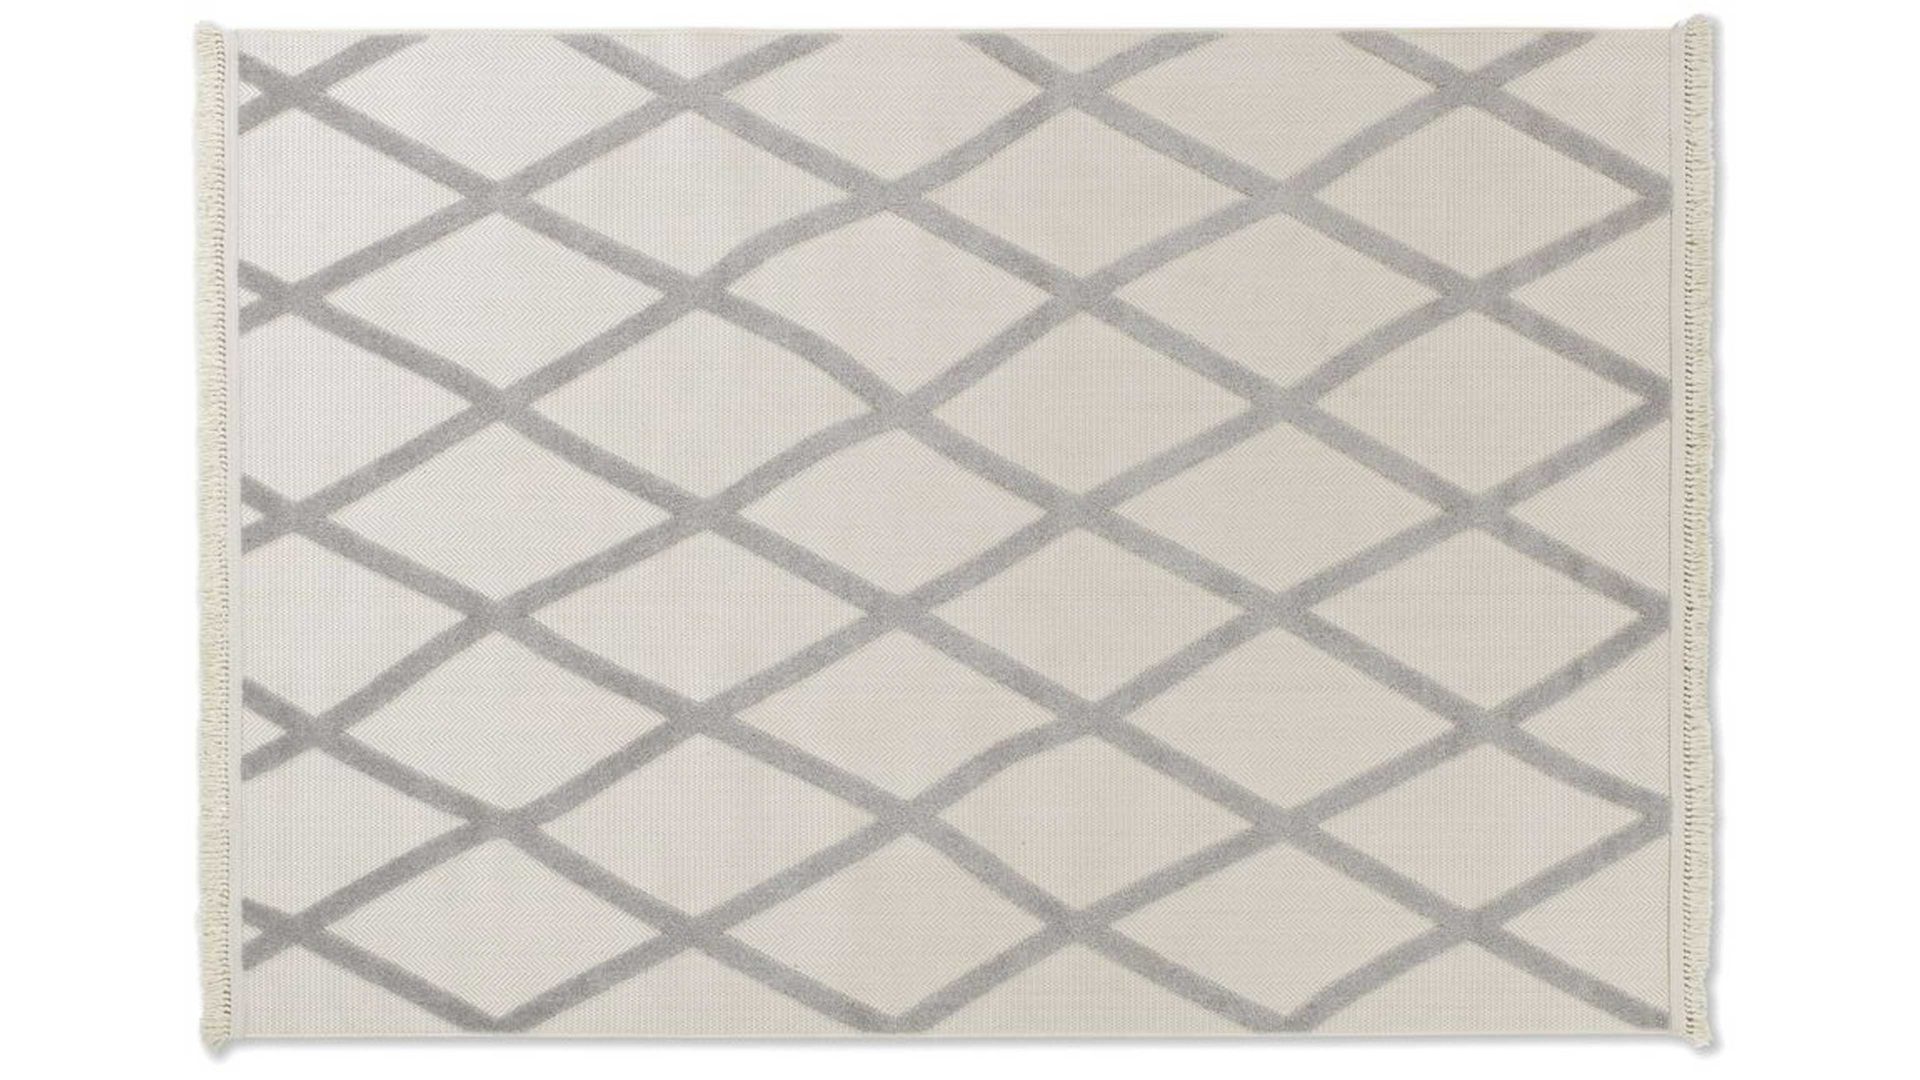 Outdoor-Teppich Golze | astra aus Kunstfaser in Grau ASTRA® Outdoor Teppich Summer graue Kunstfaser - ca. 200 x 290 cm